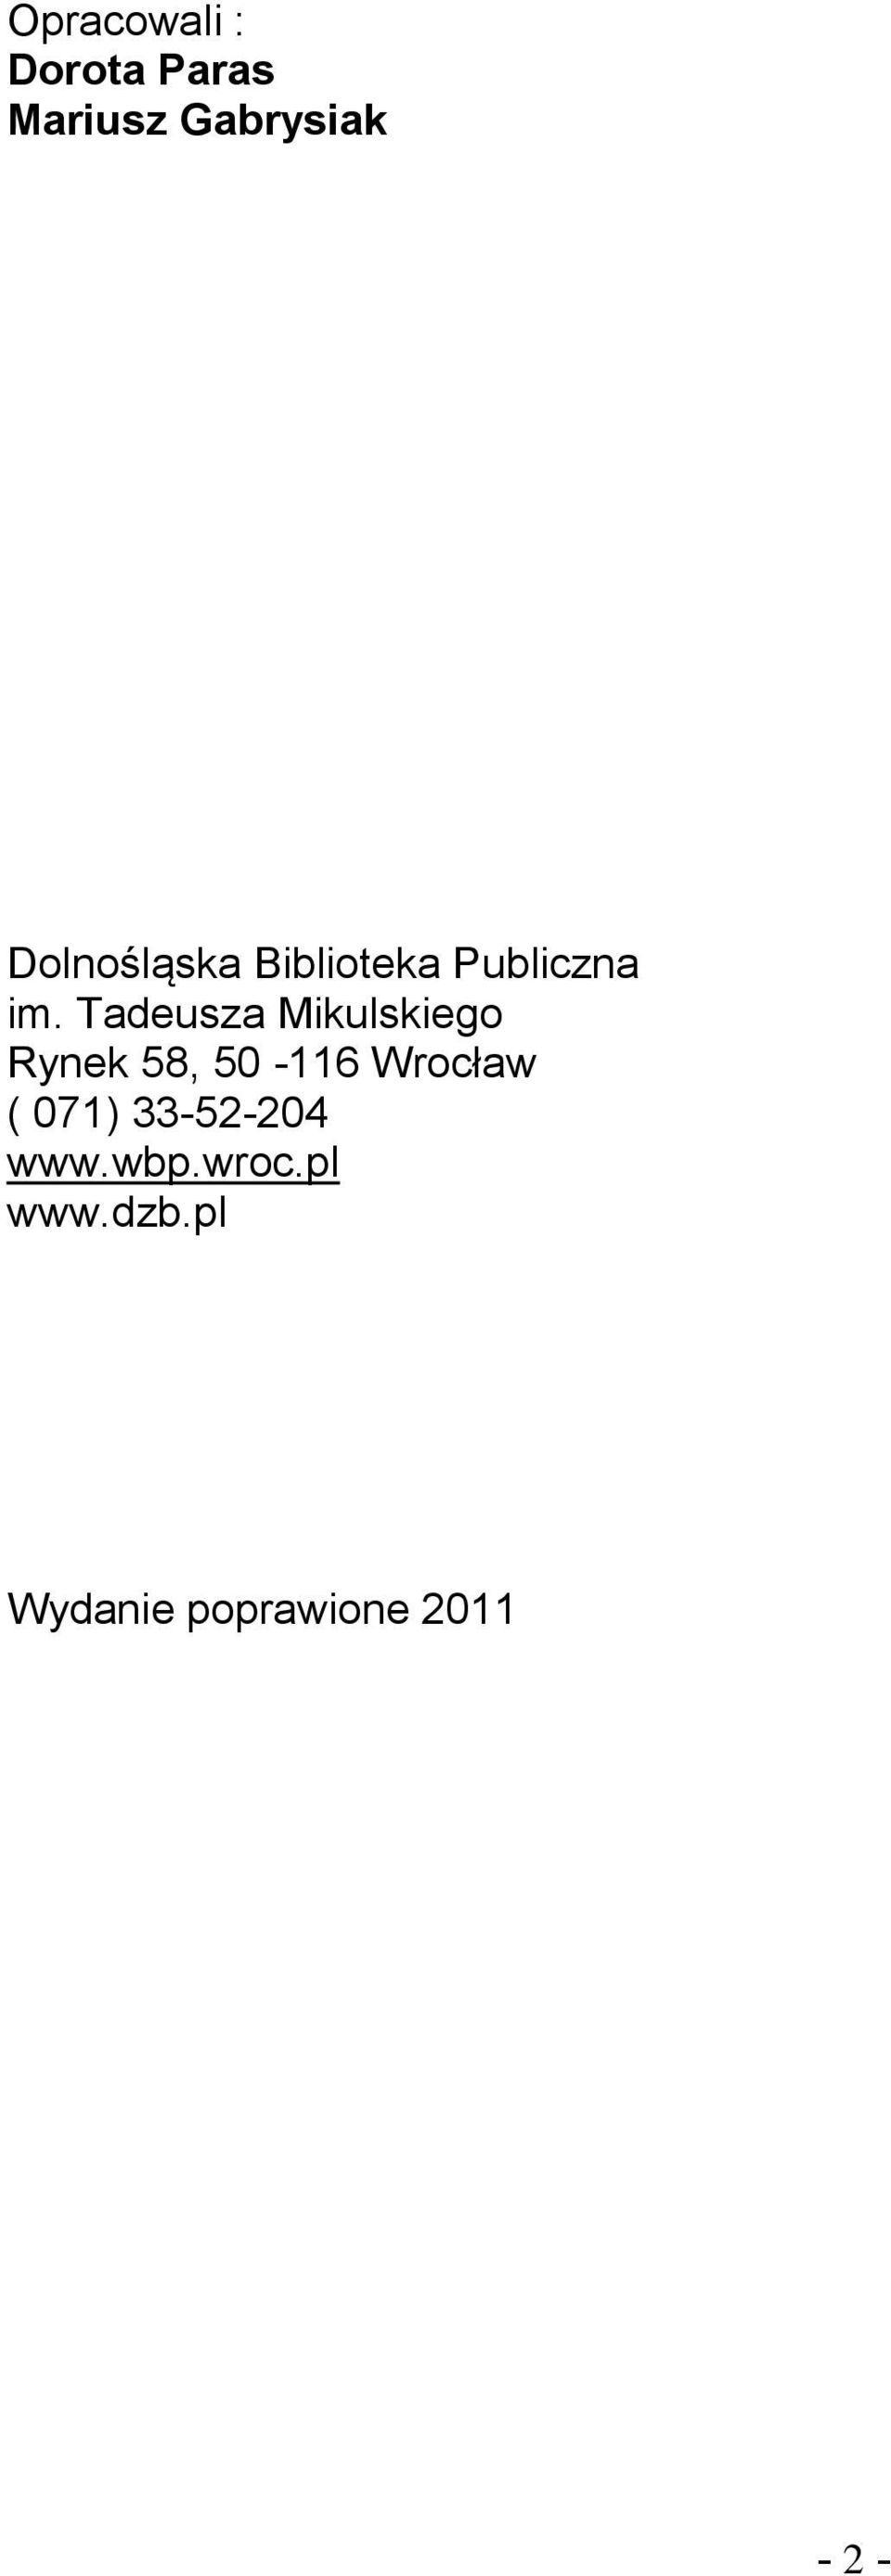 Tadeusza Mikulskiego Rynek 58, 50-116 Wrocław (